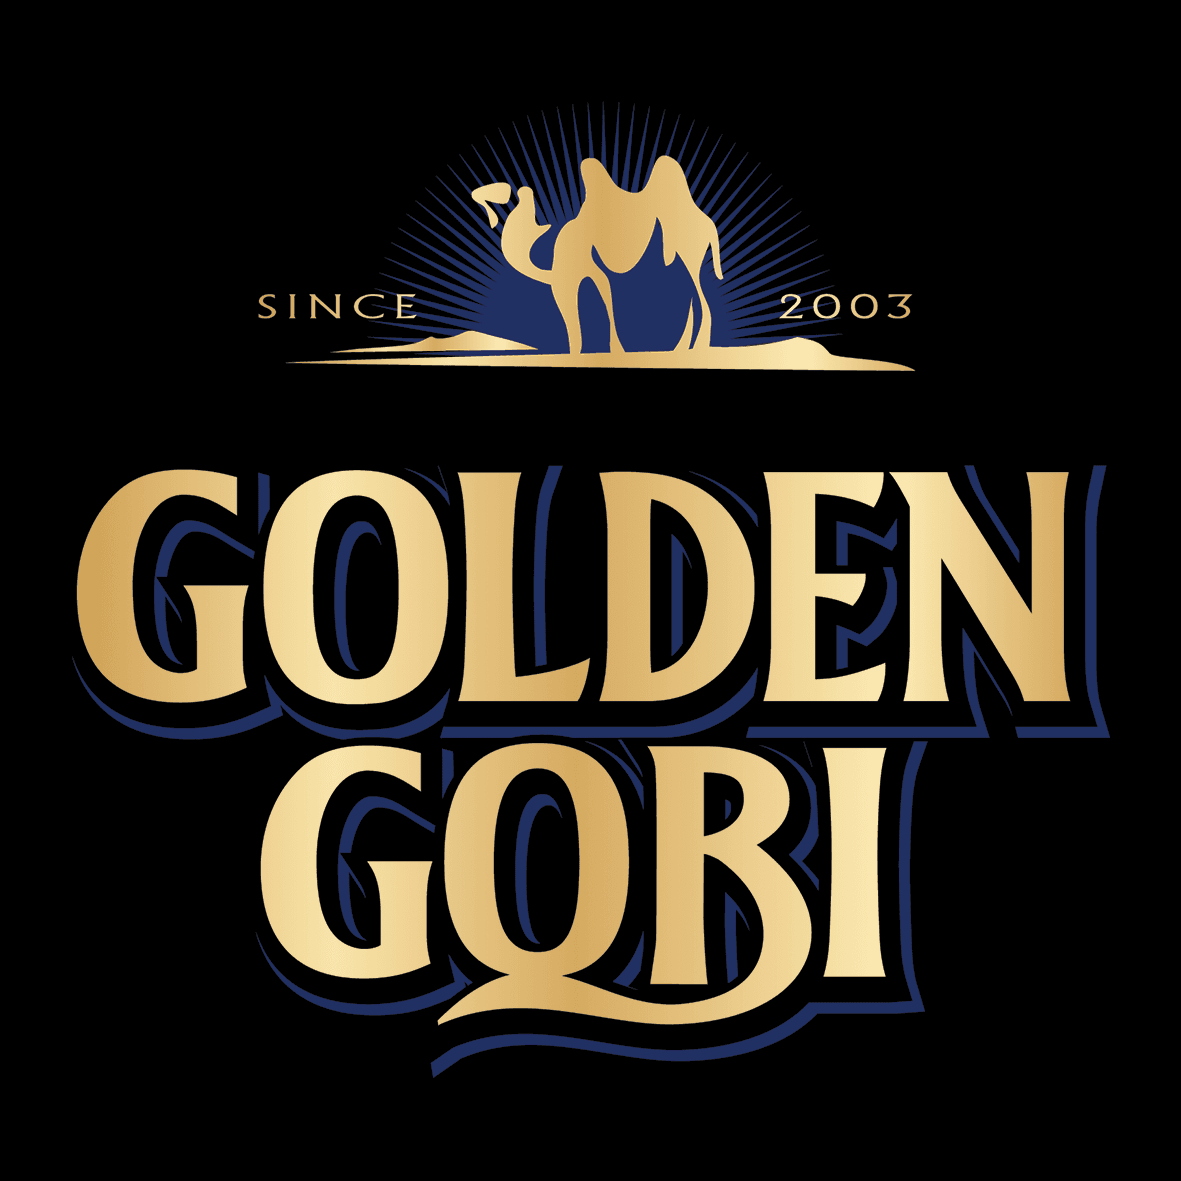 Golden Gobi